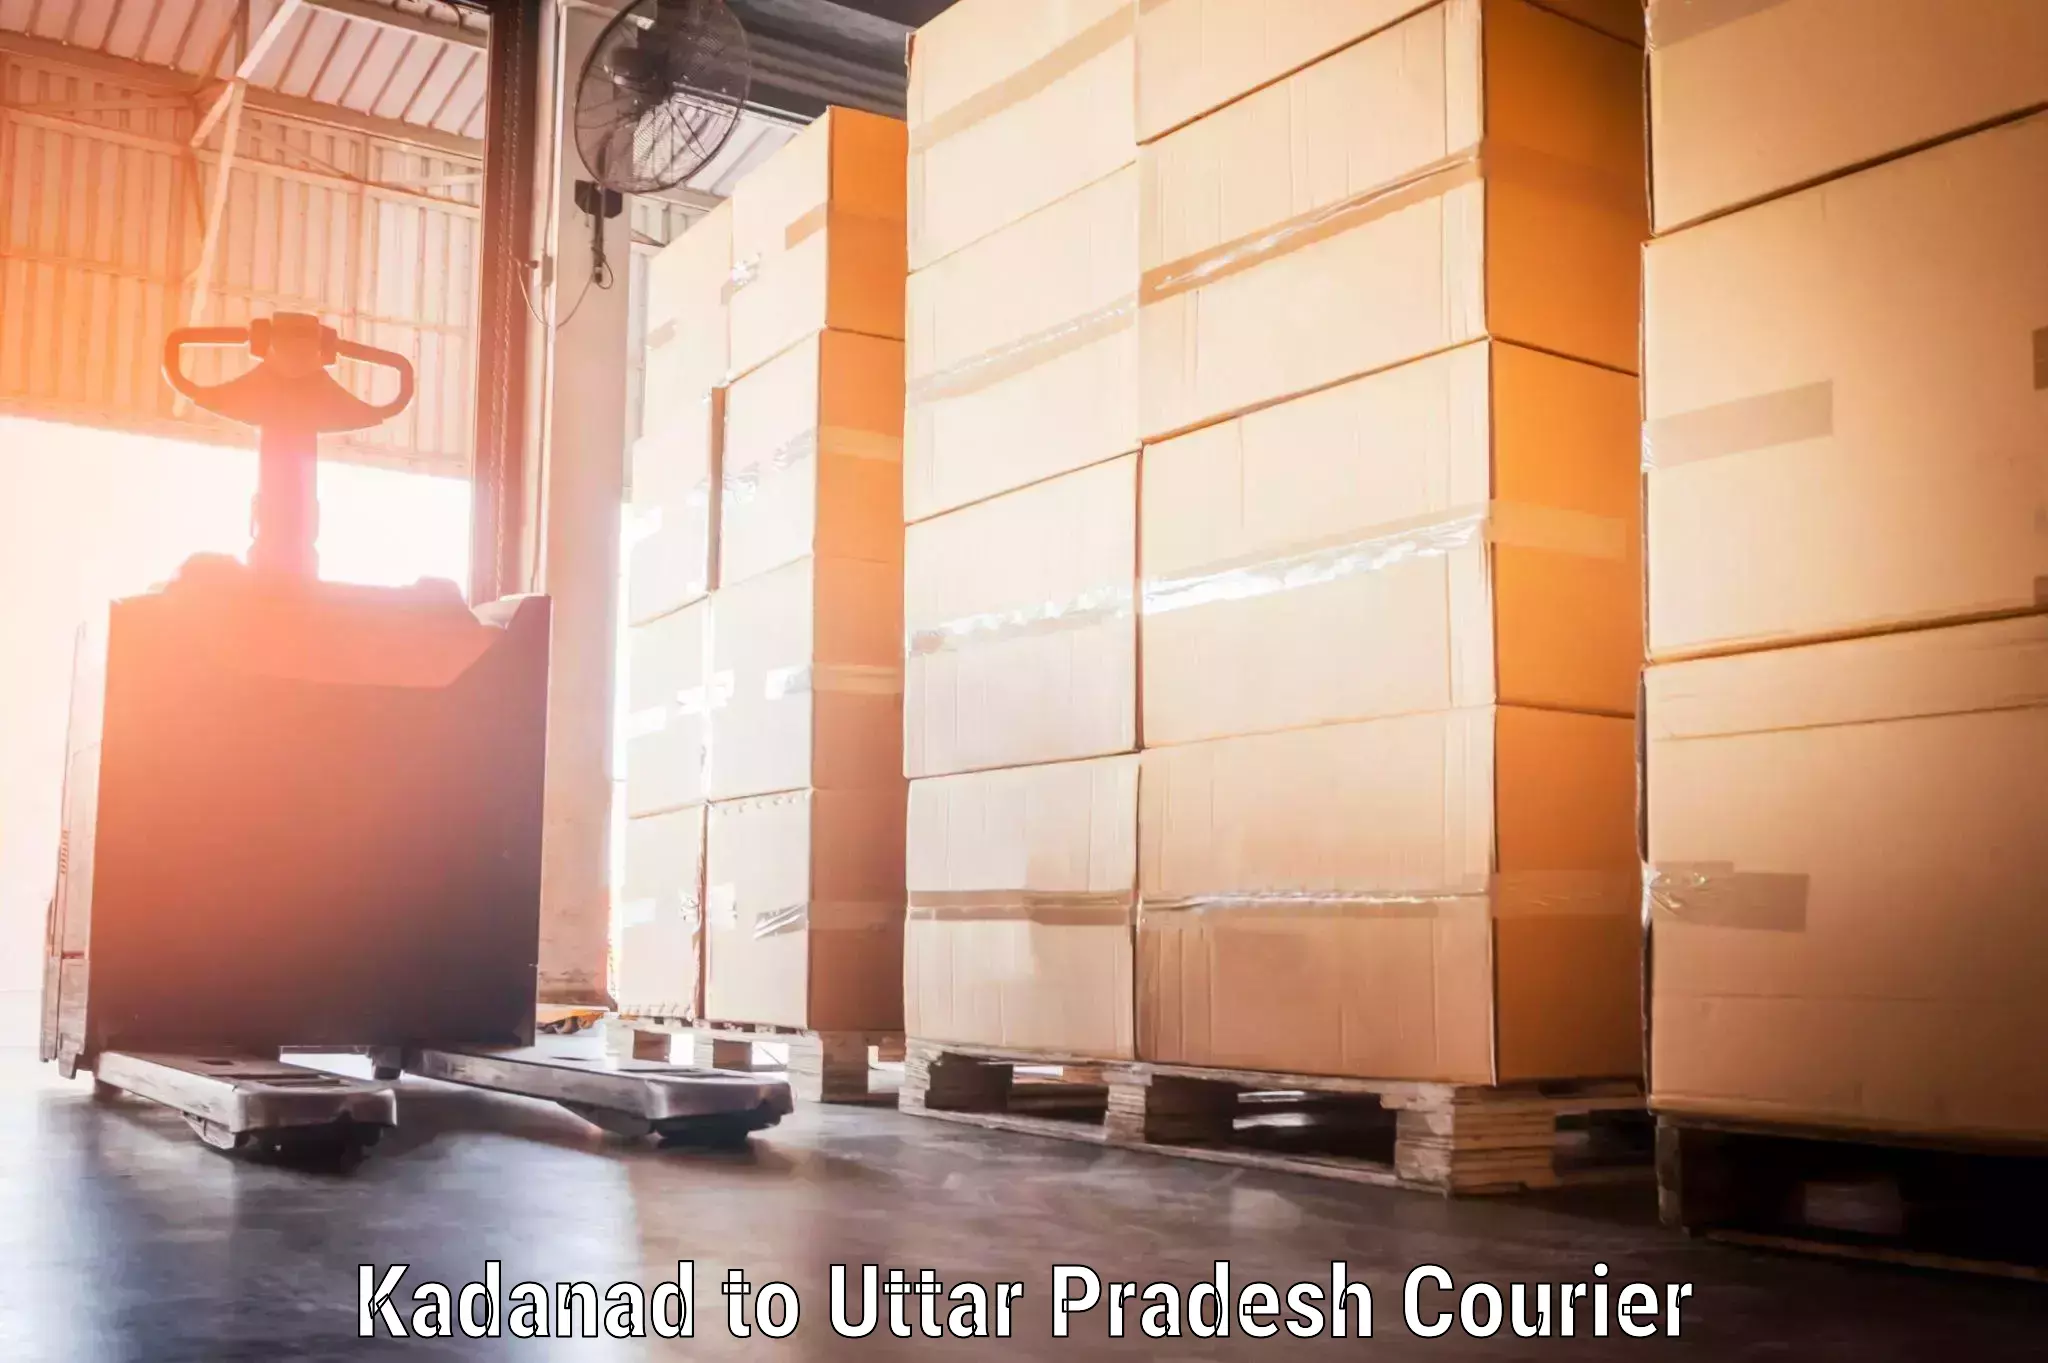 Excess baggage transport Kadanad to Dibai